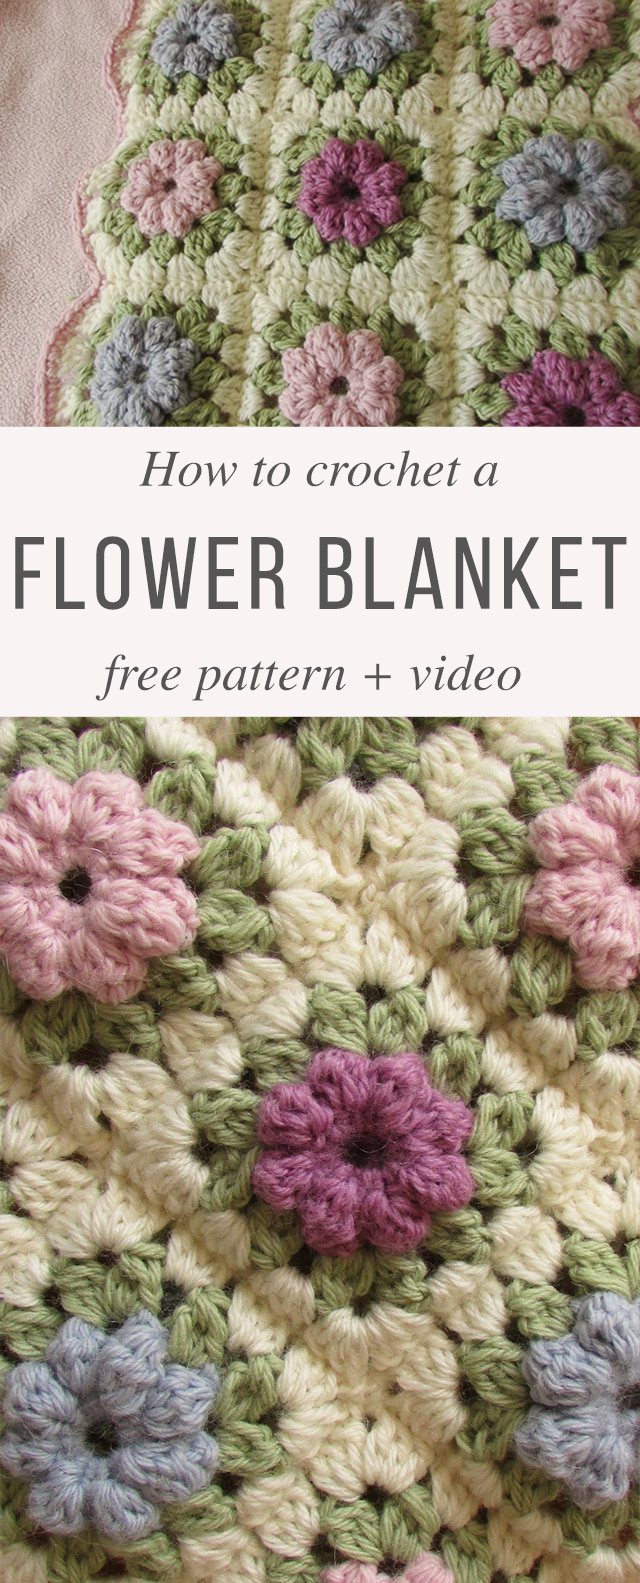 Puff Flower Blanket Free Crochet Pattern Video Tutorial